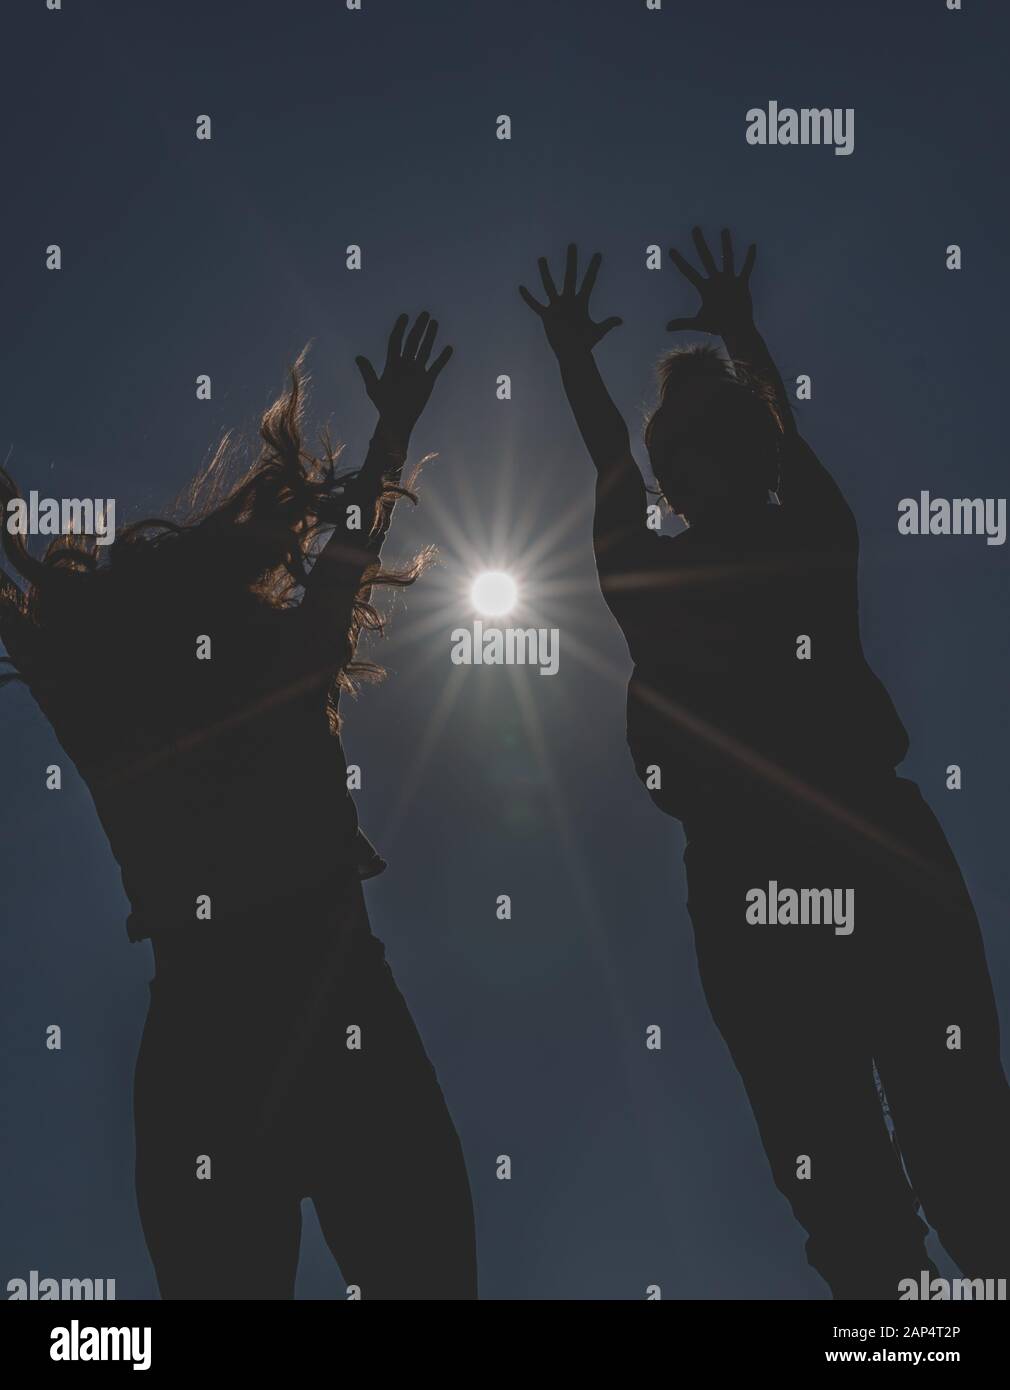 Silhouette zweier junger Frauen, die mit den Händen nach oben zur Sonne springen. Dunkles und schwaches Bild von nicht erkennbaren glücklichen Mädchen. Stockfoto